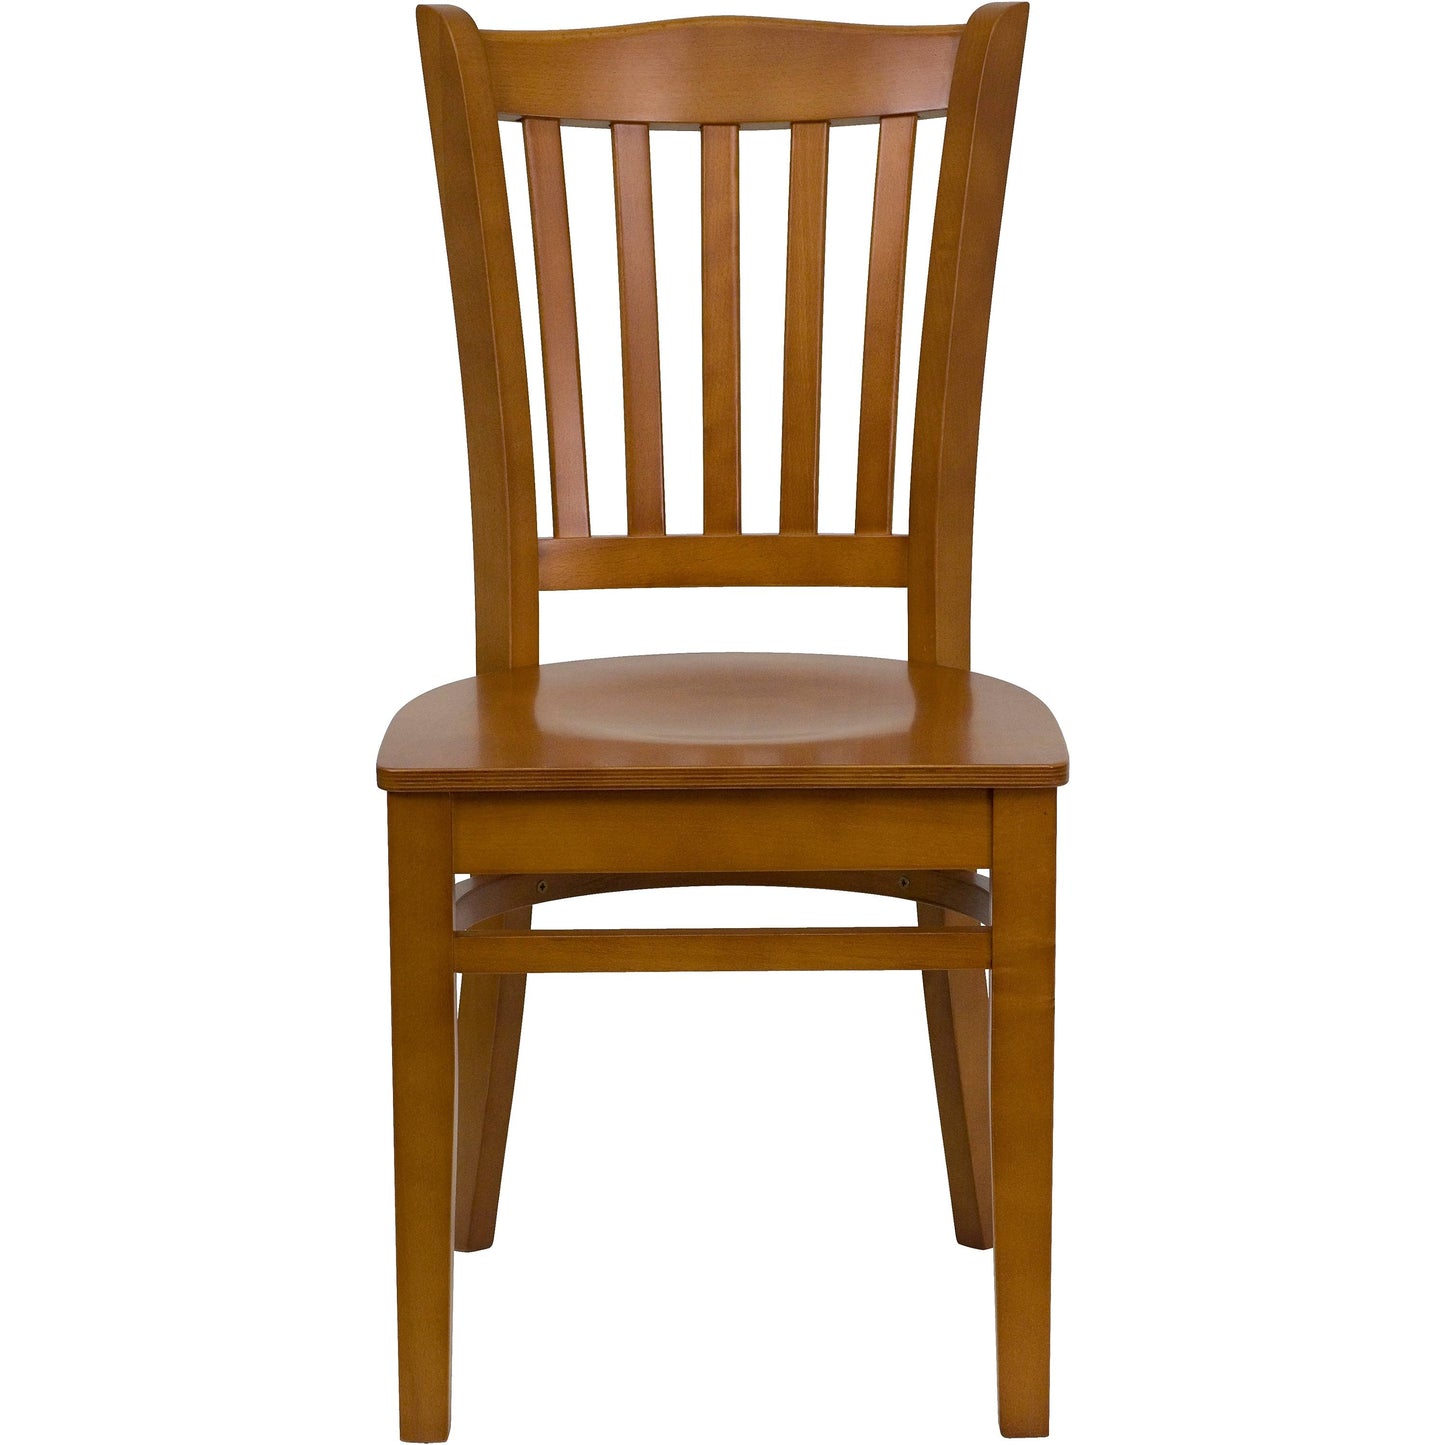 Finished Vertical Slat Back Wooden Restaurant Chair